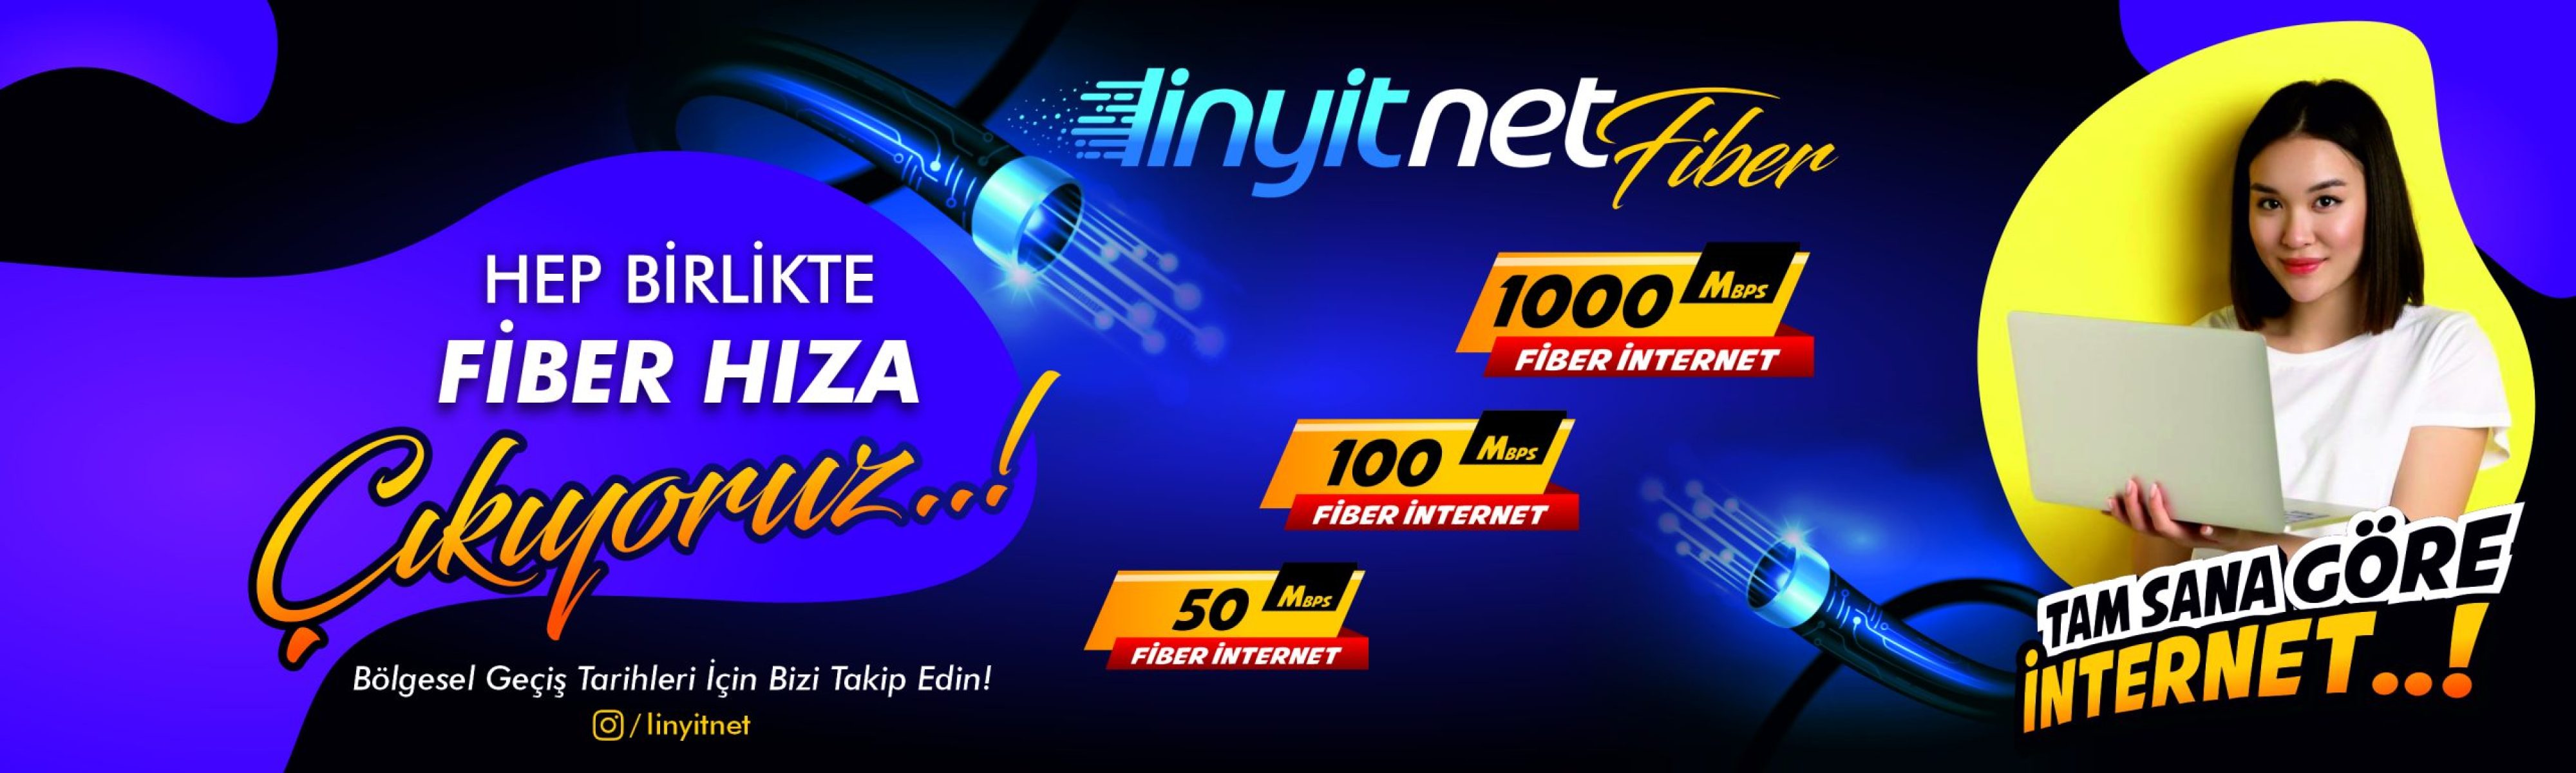 LinyitNet Fiber İle 1000 Mbps İnternet